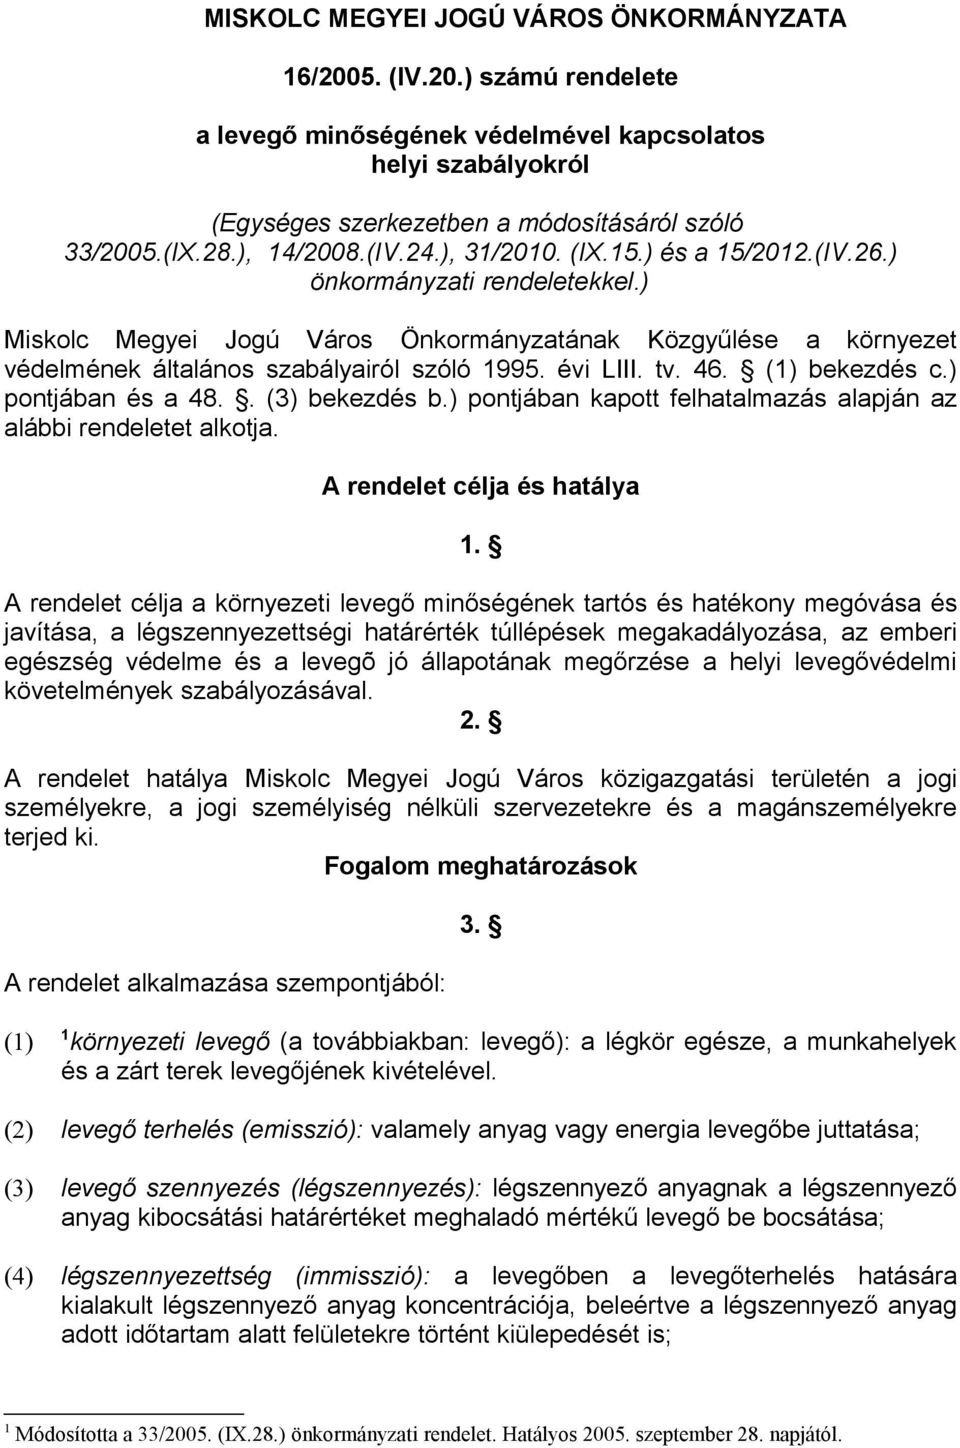 ) Miskolc Megyei Jogú Város Önkormányzatának Közgyűlése a környezet védelmének általános szabályairól szóló 1995. évi LIII. tv. 46. bekezdés c.) pontjában és a 48.. bekezdés b.